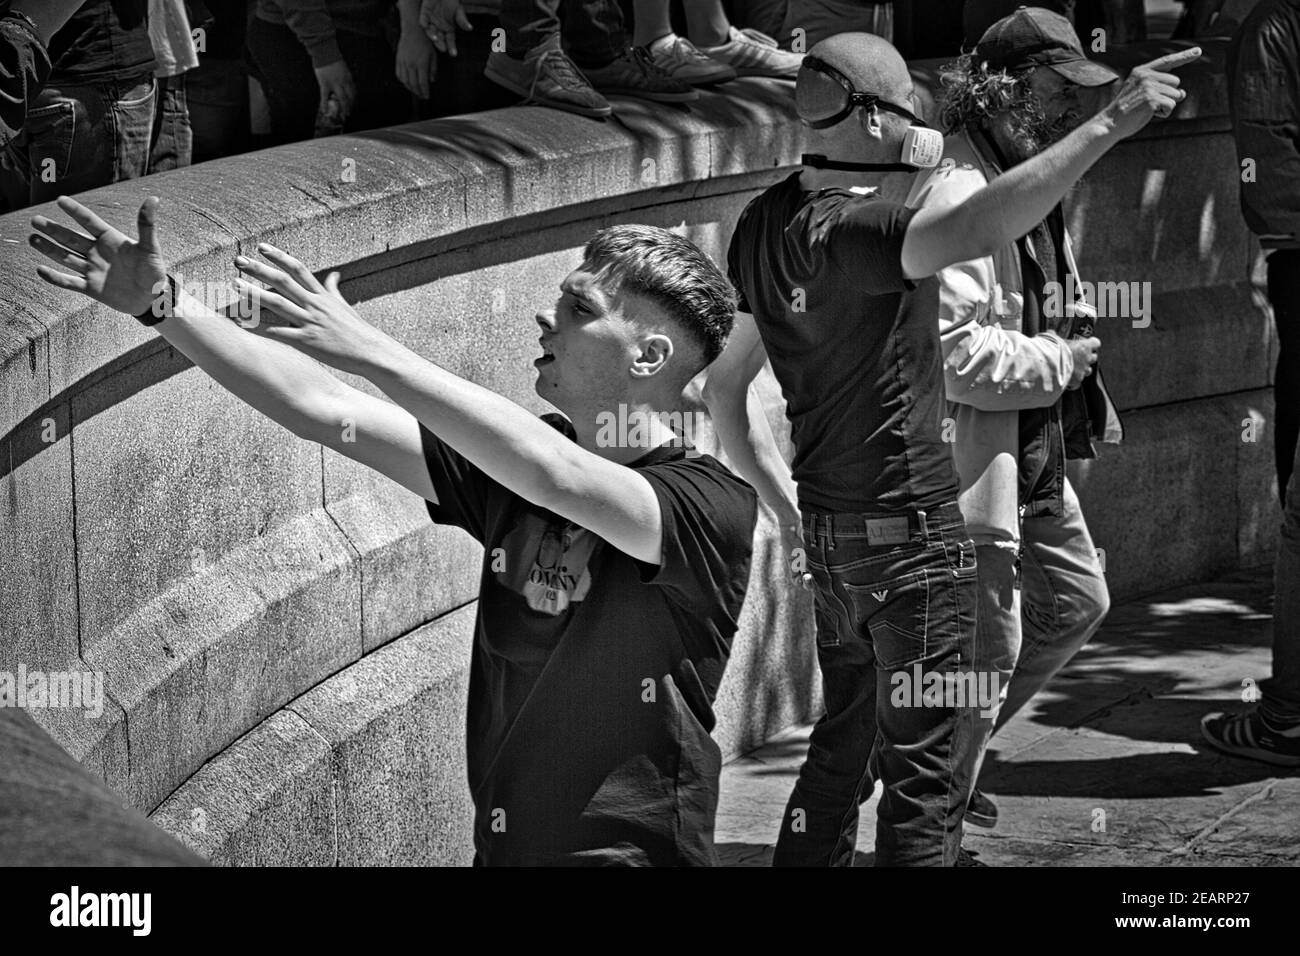 Londra 13 giugno 2020 i manifestanti di gruppi di estrema destra si scontrano con i dimostratori e la polizia di BLM a Trafalgar Square Foto Stock